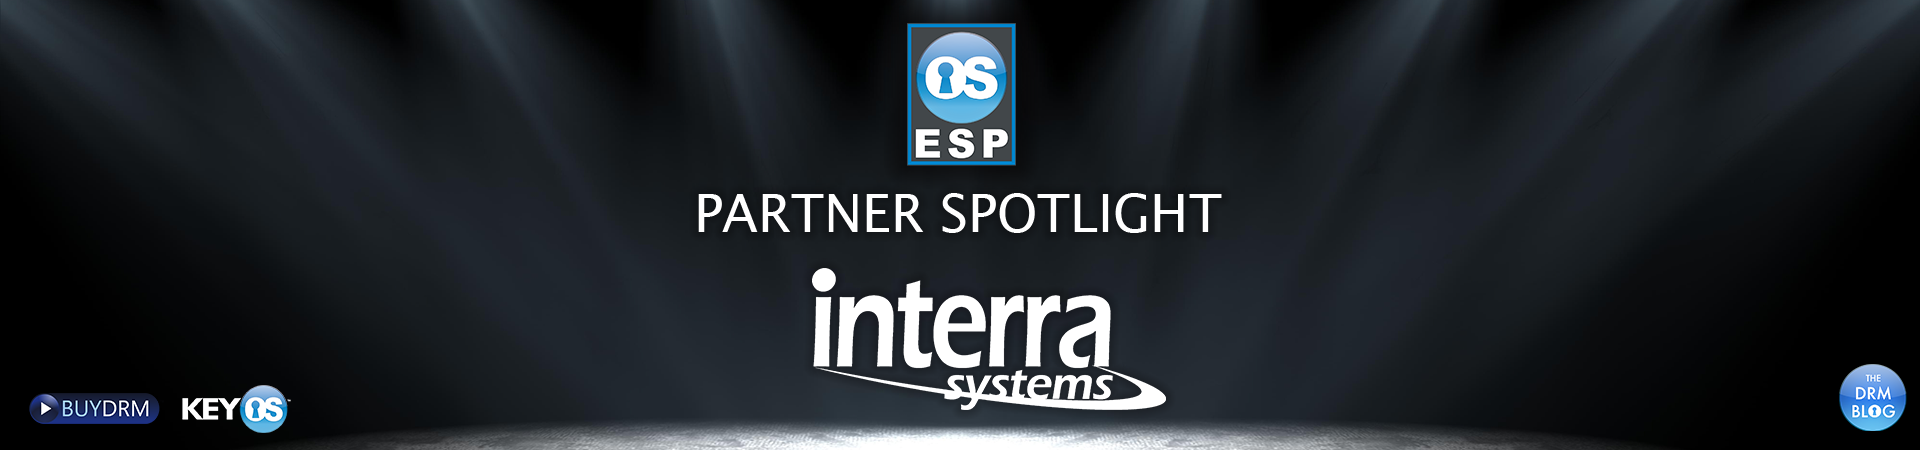 ESPPartnerSpotlight_InterraSystems_Desktop_1920x450